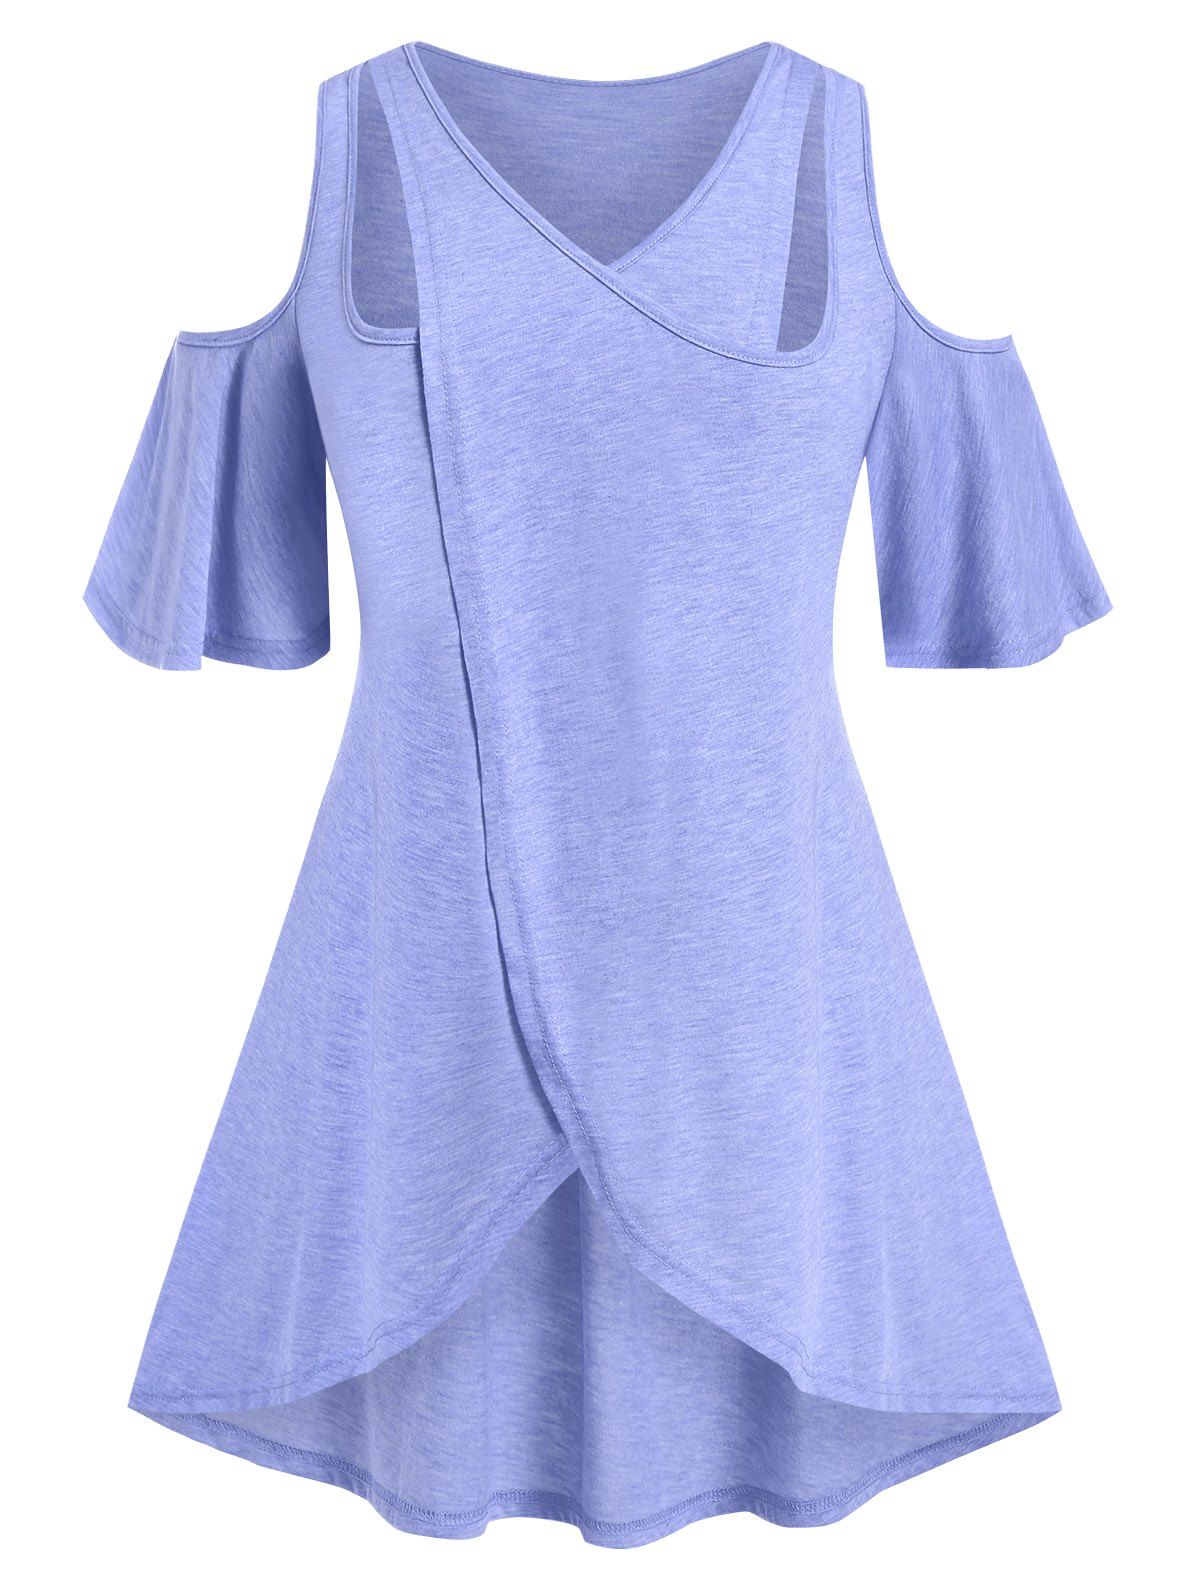 Plus Size Cutout Overlap Open Shoulder Tunic Tee - LIGHT BLUE 4X